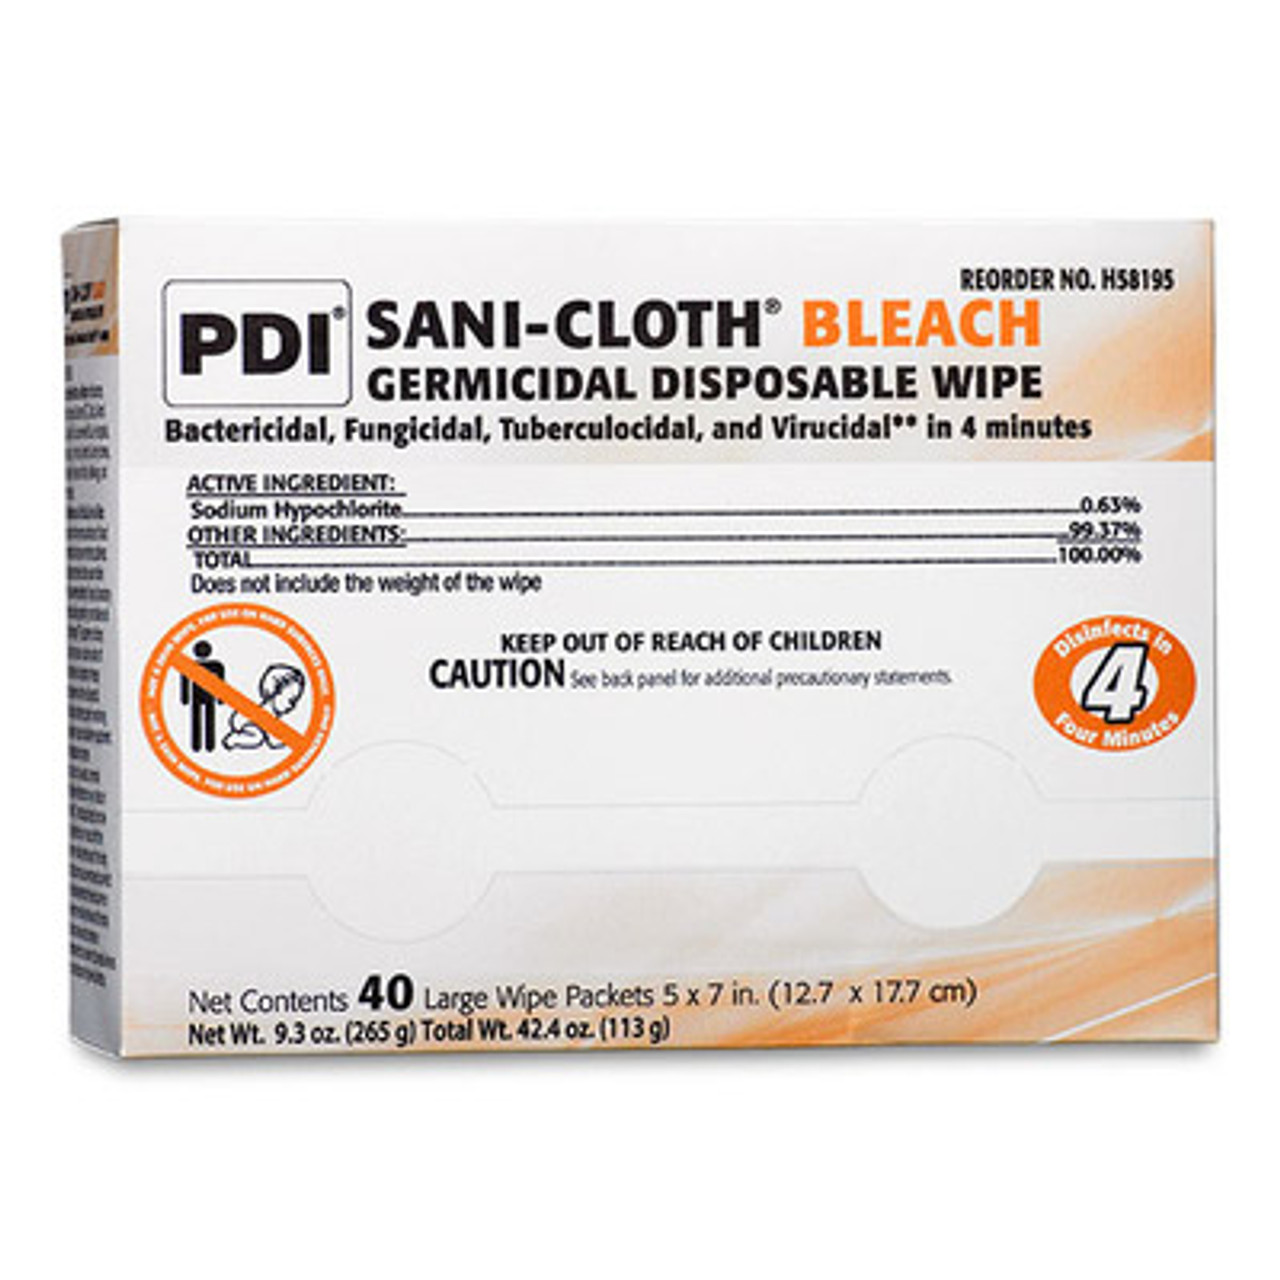 PDI SANI-CLOTH BLEACH GERMICIDAL DISPOSABLE WIPE, H58195